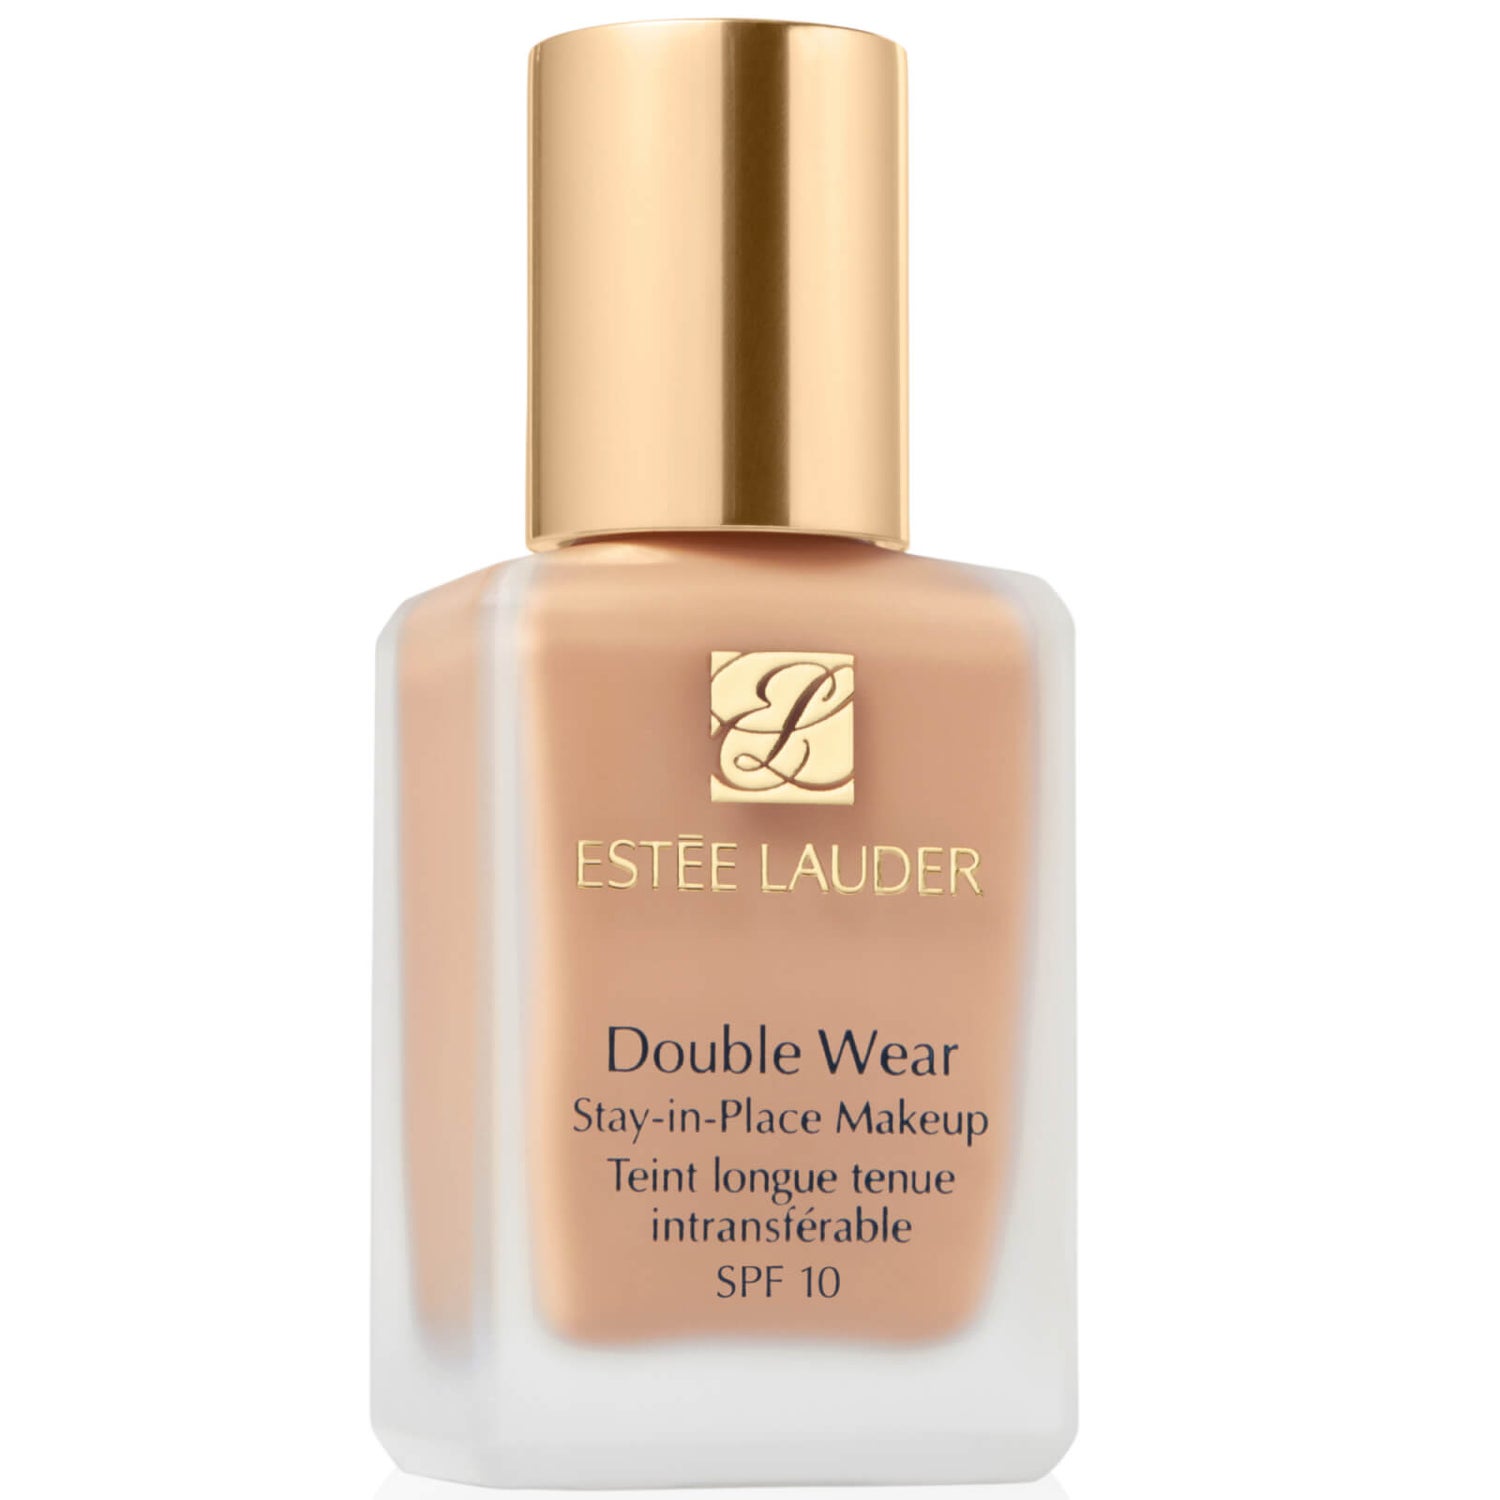 Estée Lauder Double Wear Stay-In-Place Makeup Podkład 30 ml (Różne odcienie)